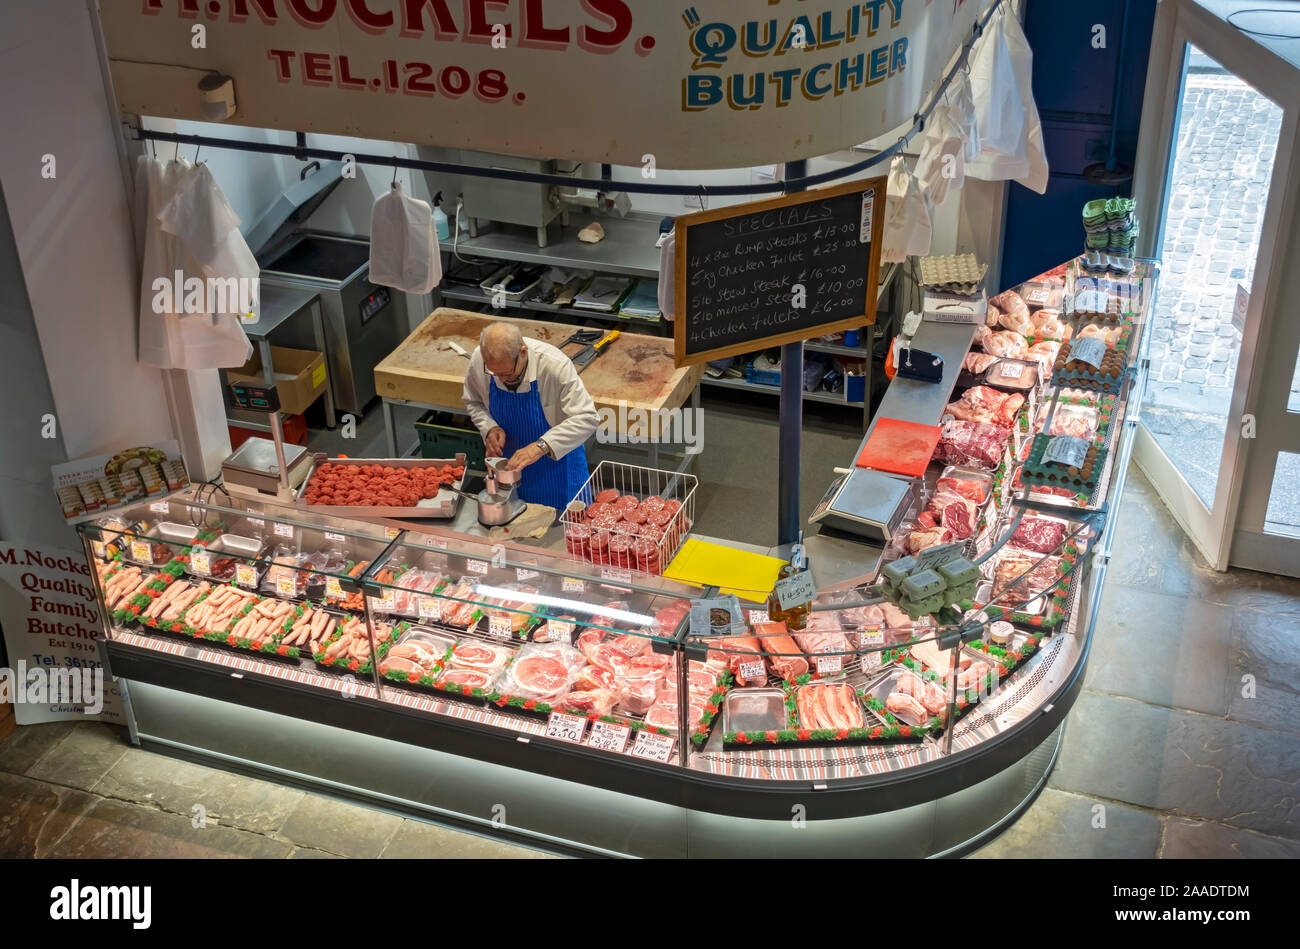 Boucher qui fait des hamburgers de viande dans son magasin dans le marché intérieur vu de Scarborough North Yorkshire Angleterre Royaume-Uni Grande-Bretagne Banque D'Images